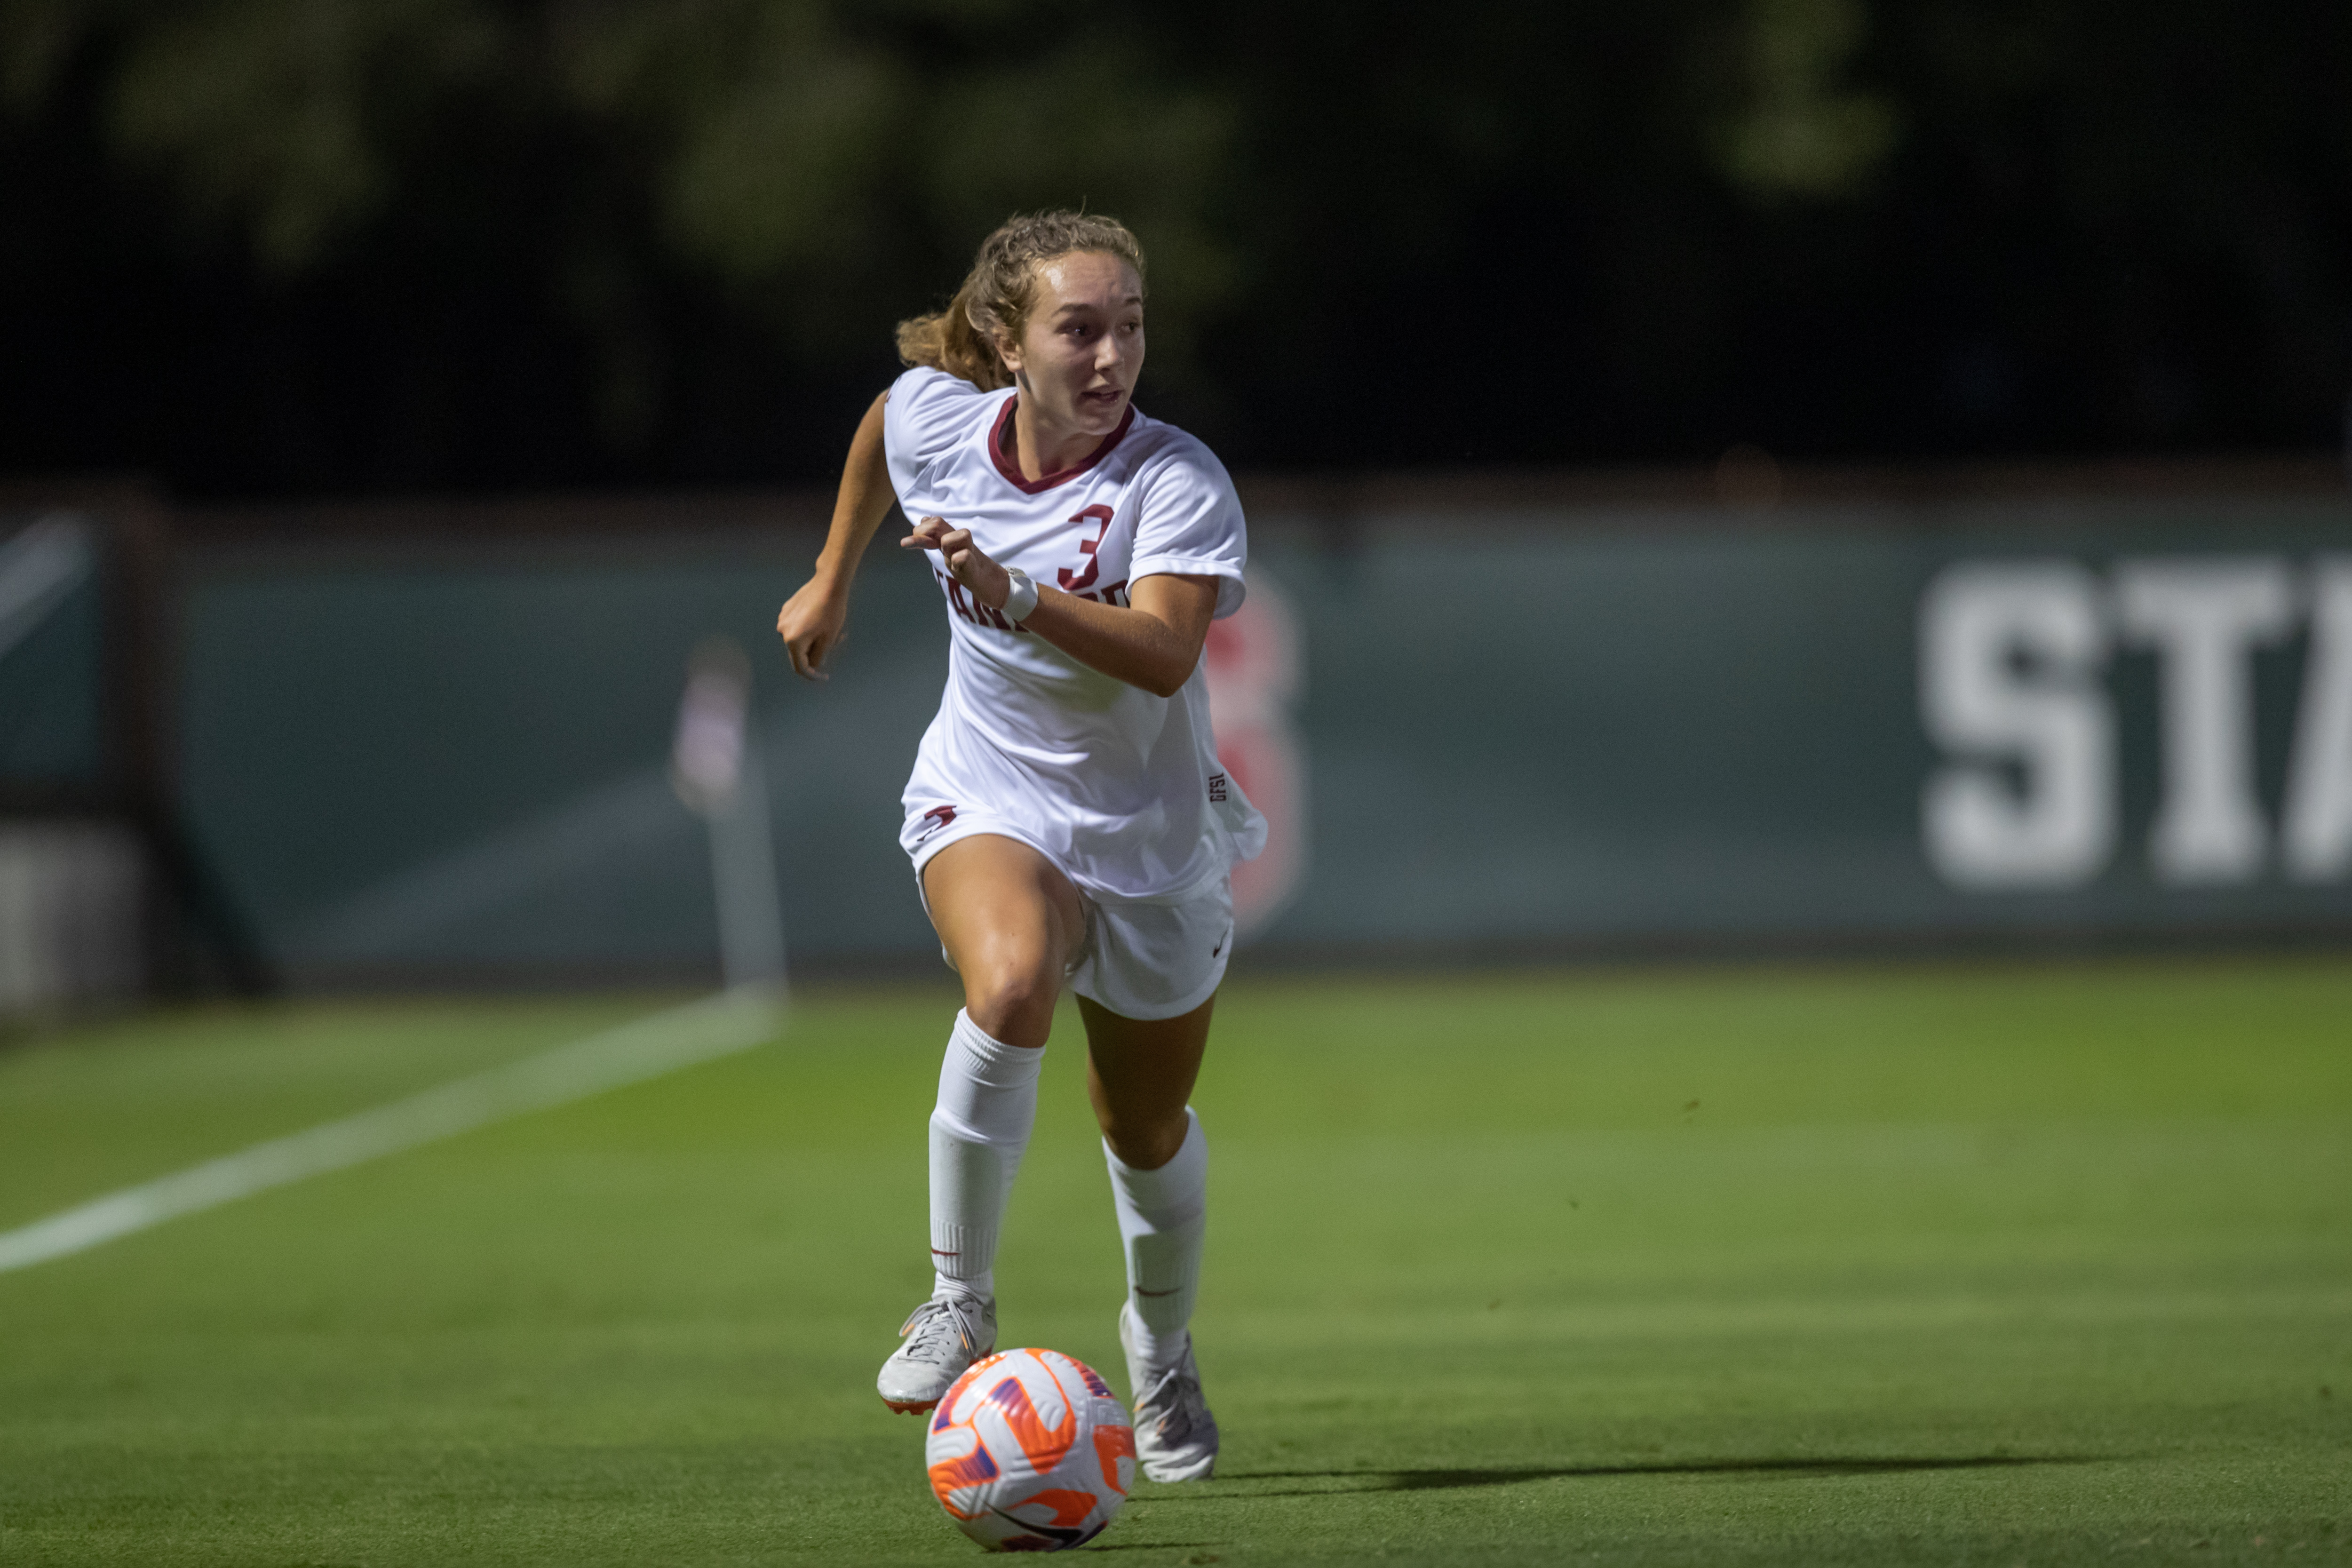 Stanford women's soccer upsets Penn State